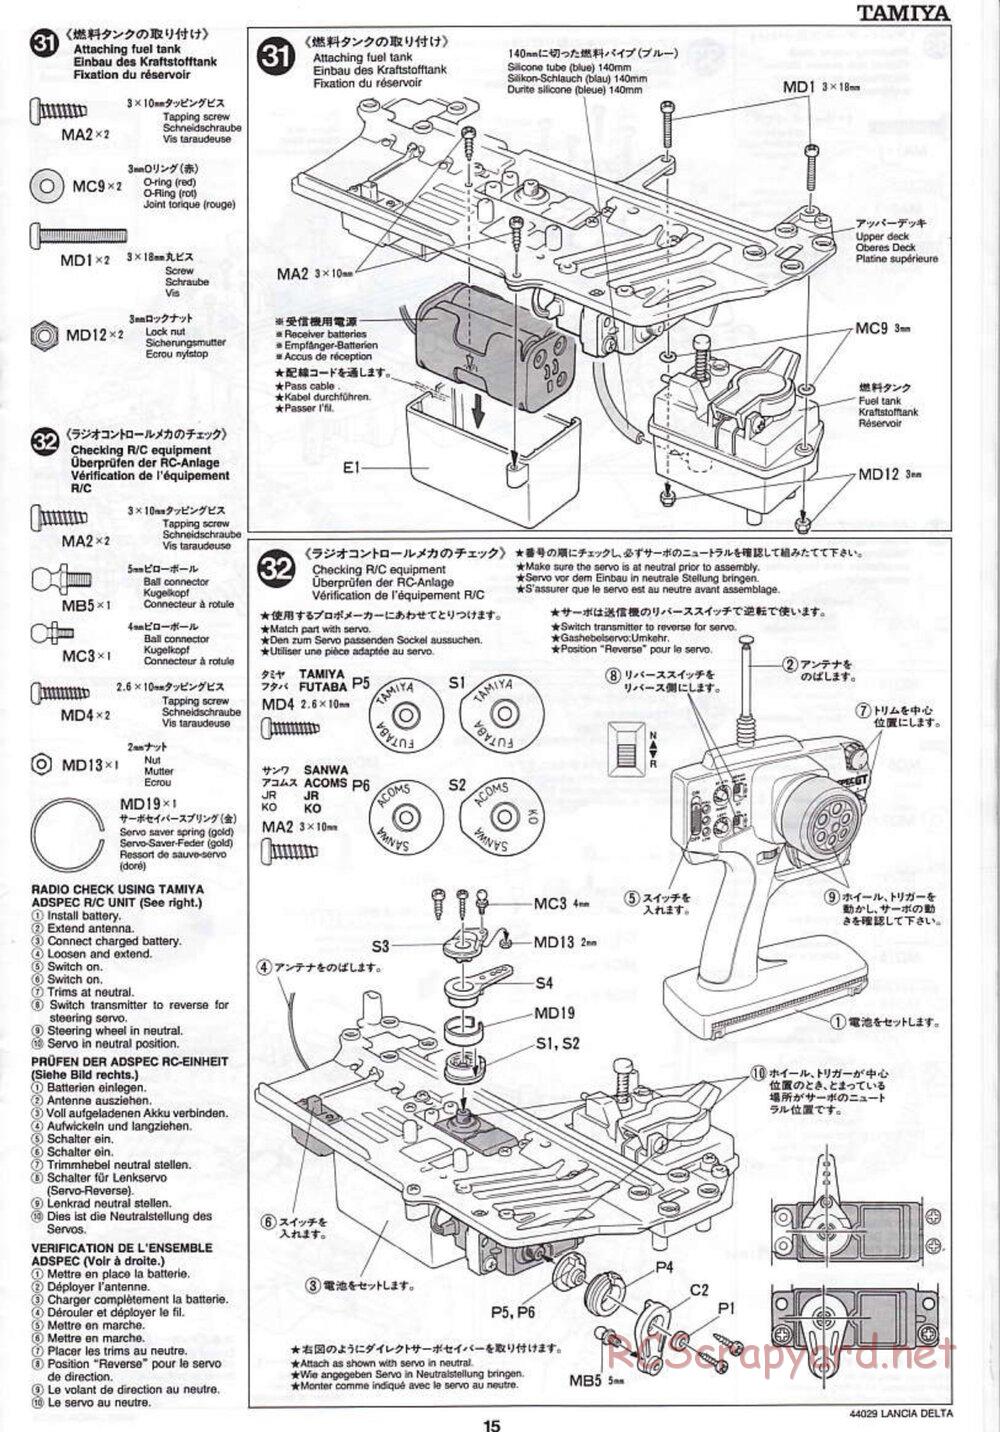 Tamiya - Lancia Delta HF Integrale - TG10 Mk.1 Chassis - Manual - Page 15